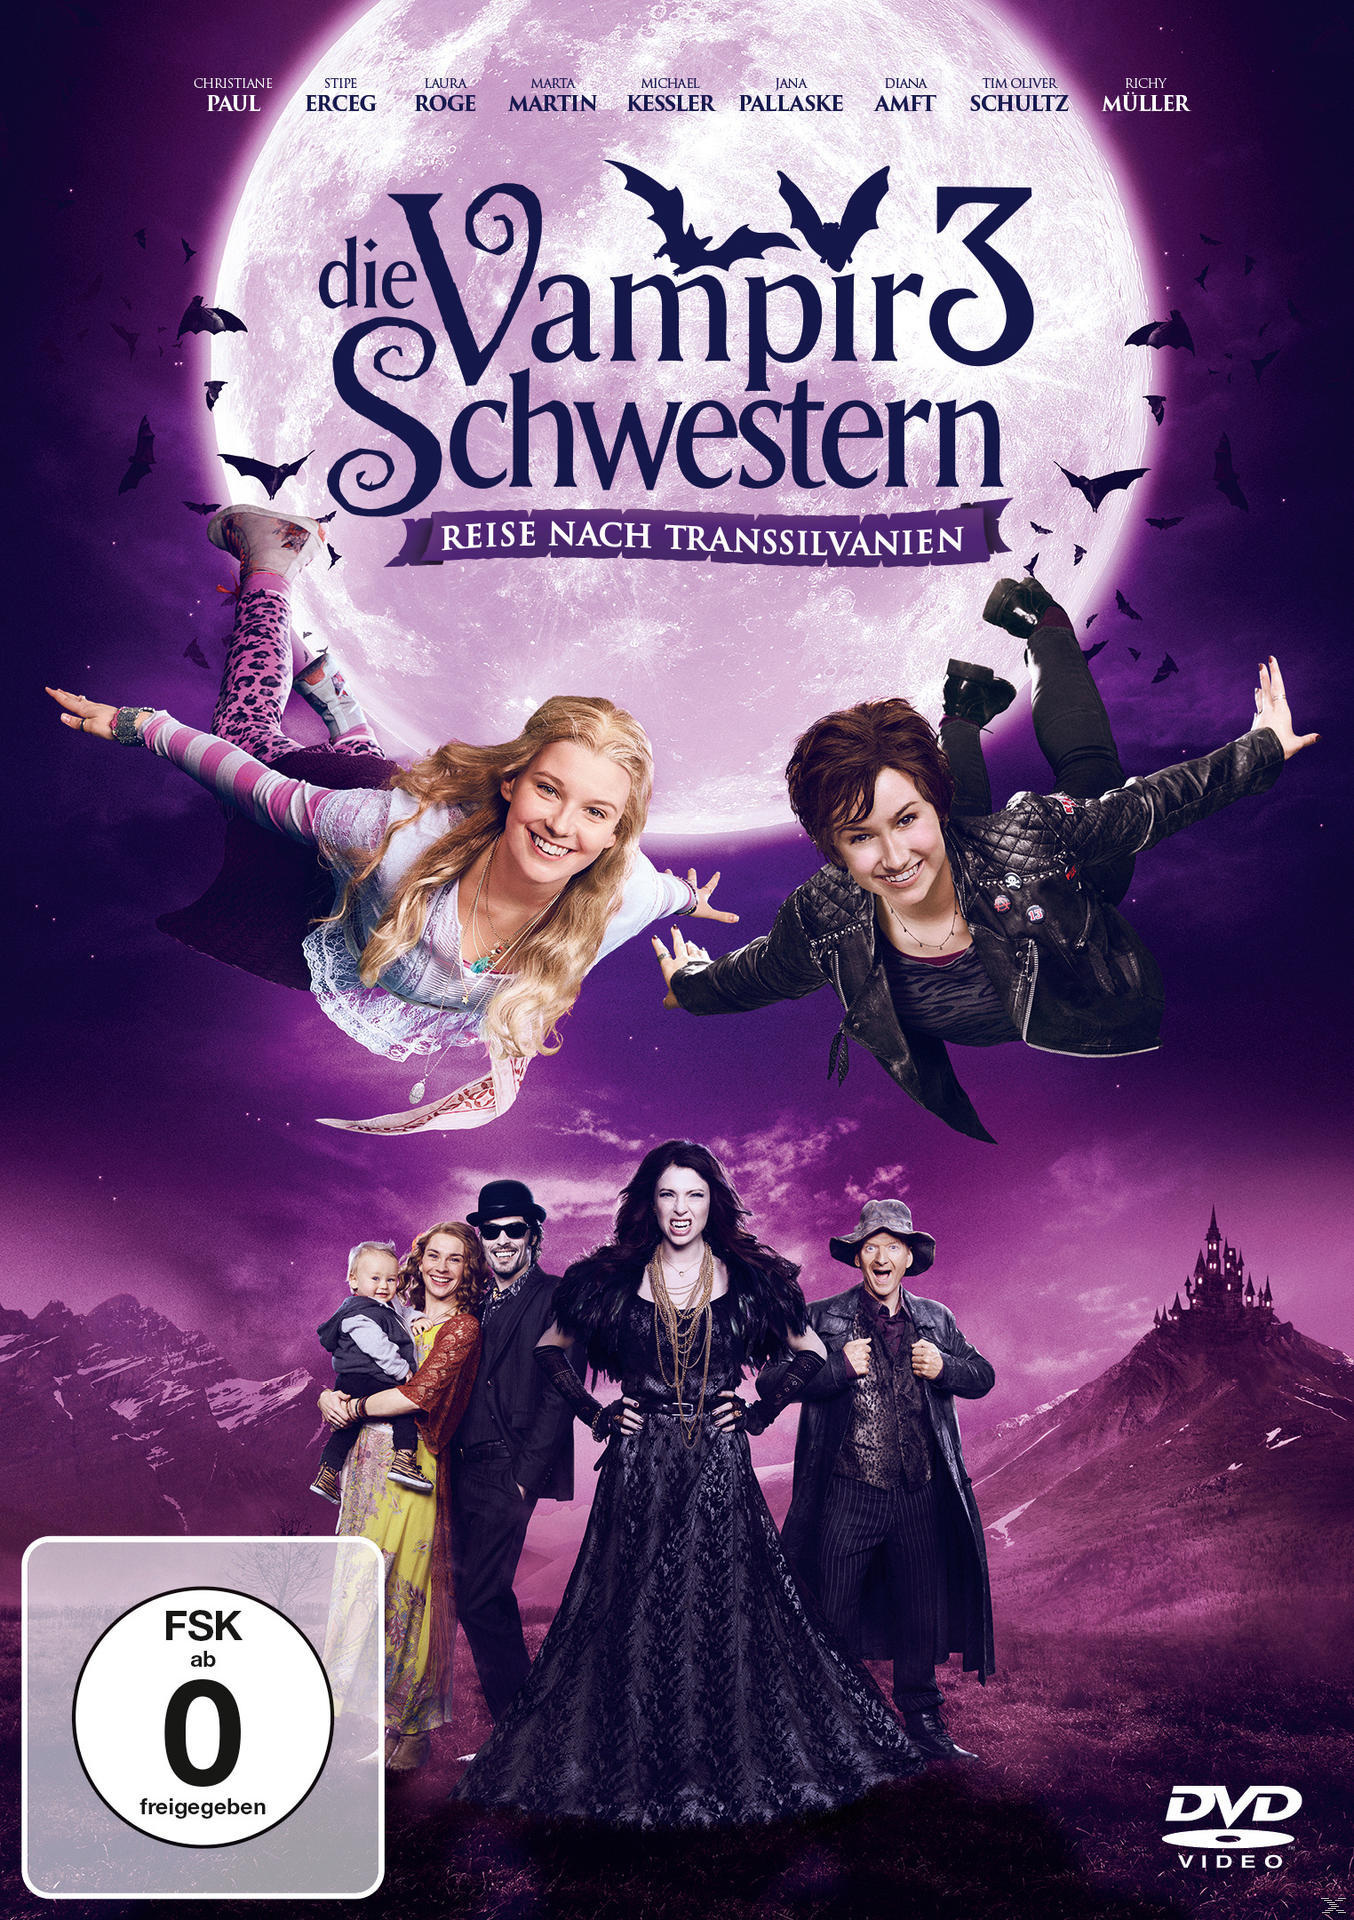 Transsilvanien nach Reise Vampirschwestern - Die DVD 3